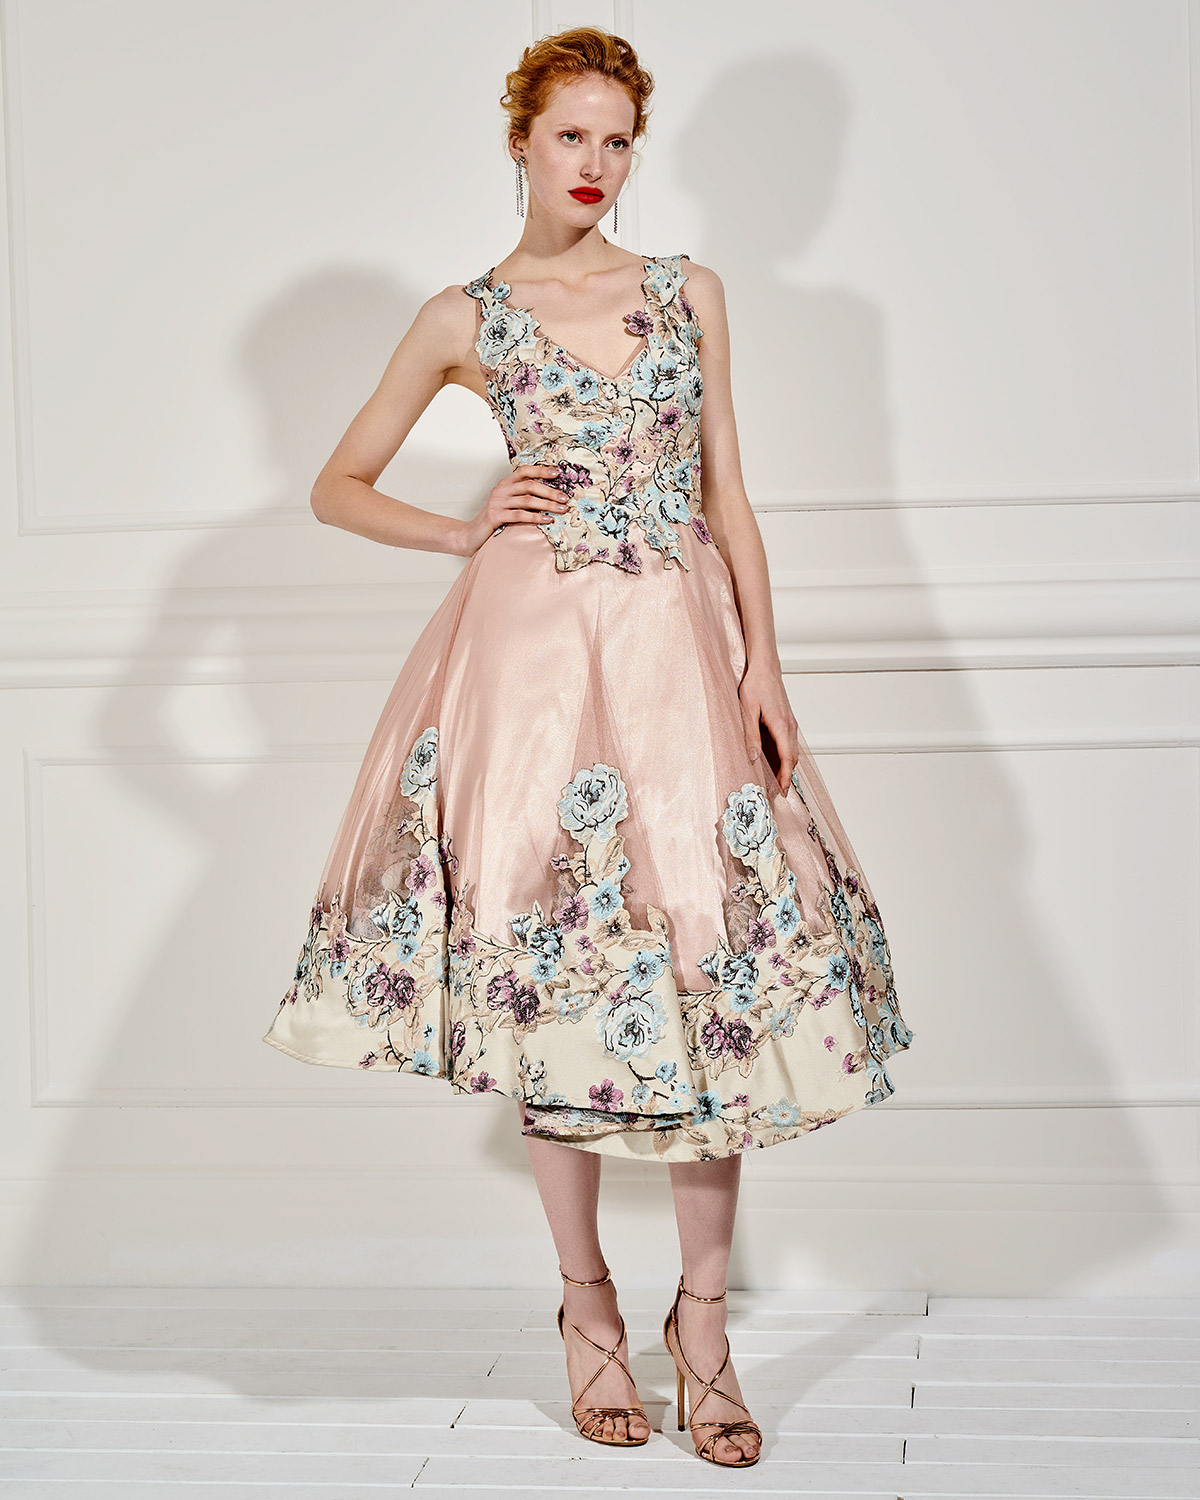 Βραδυνά Φορέματα / Βραδινό μακρύ φόρεμα από τούλι με απλικέ λουλούδια